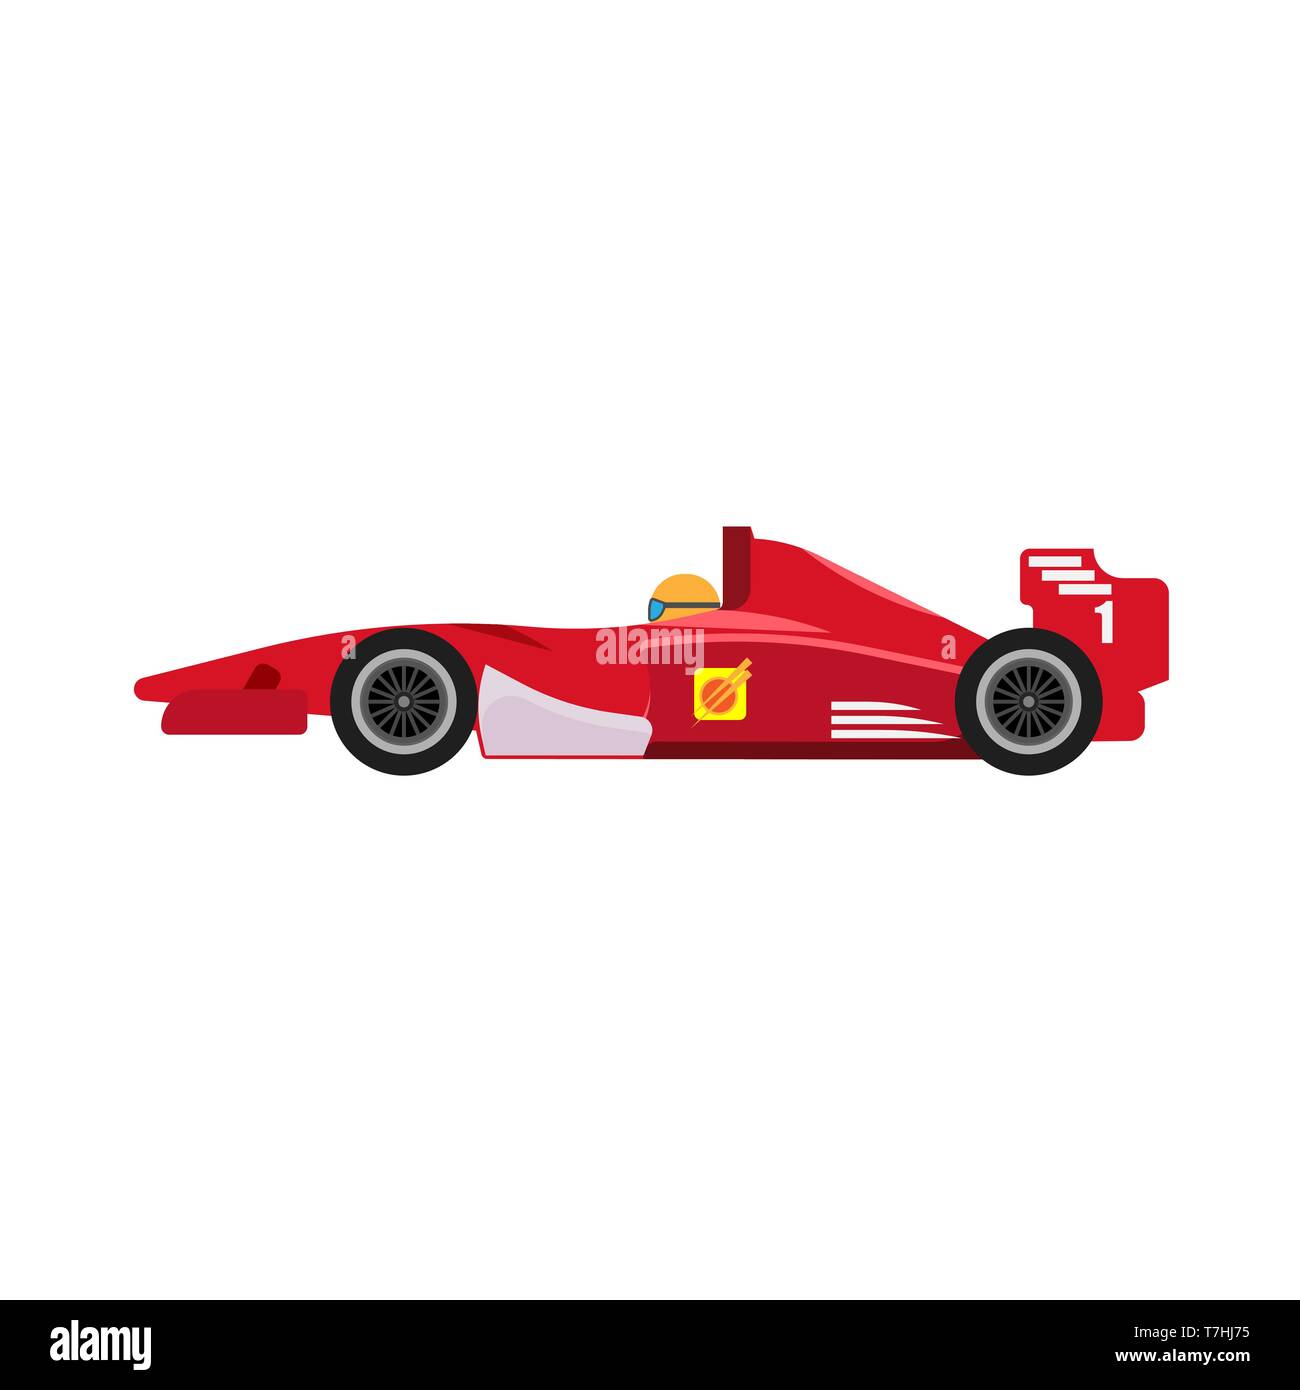 La formule 1 voiture de course rouge vue de côté l'icône vecteur. Un championnat f1 extreme sport automobile voiture véhicule Illustration de Vecteur